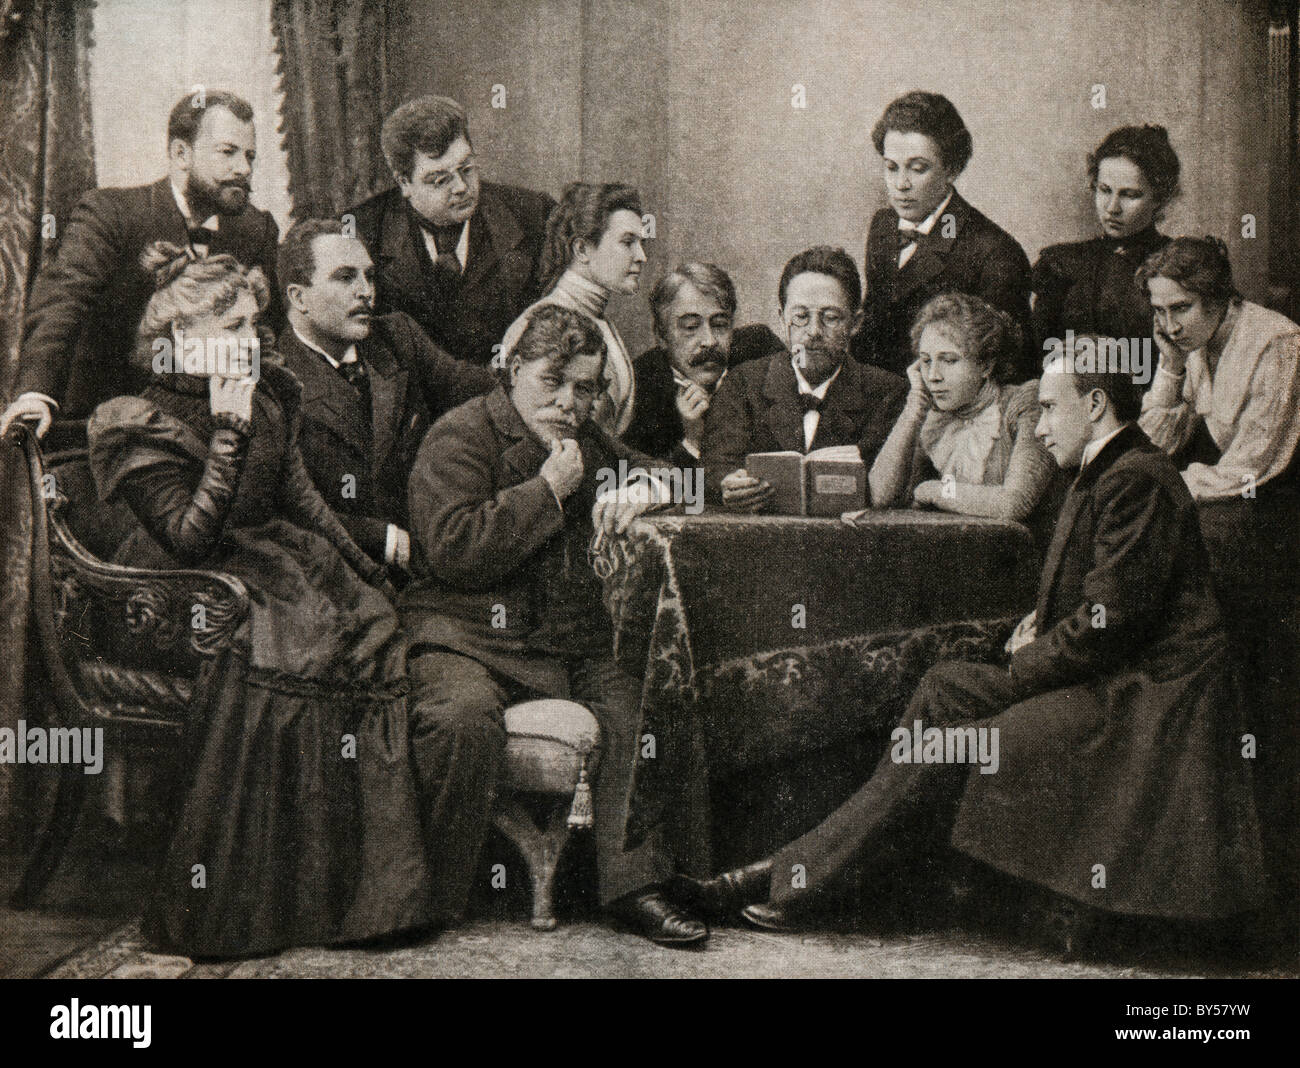 Parmi les artistes d'Anton Tchekhov - participants de la pièce "La Mouette" au Théâtre Académique d'Art de Moscou Banque D'Images